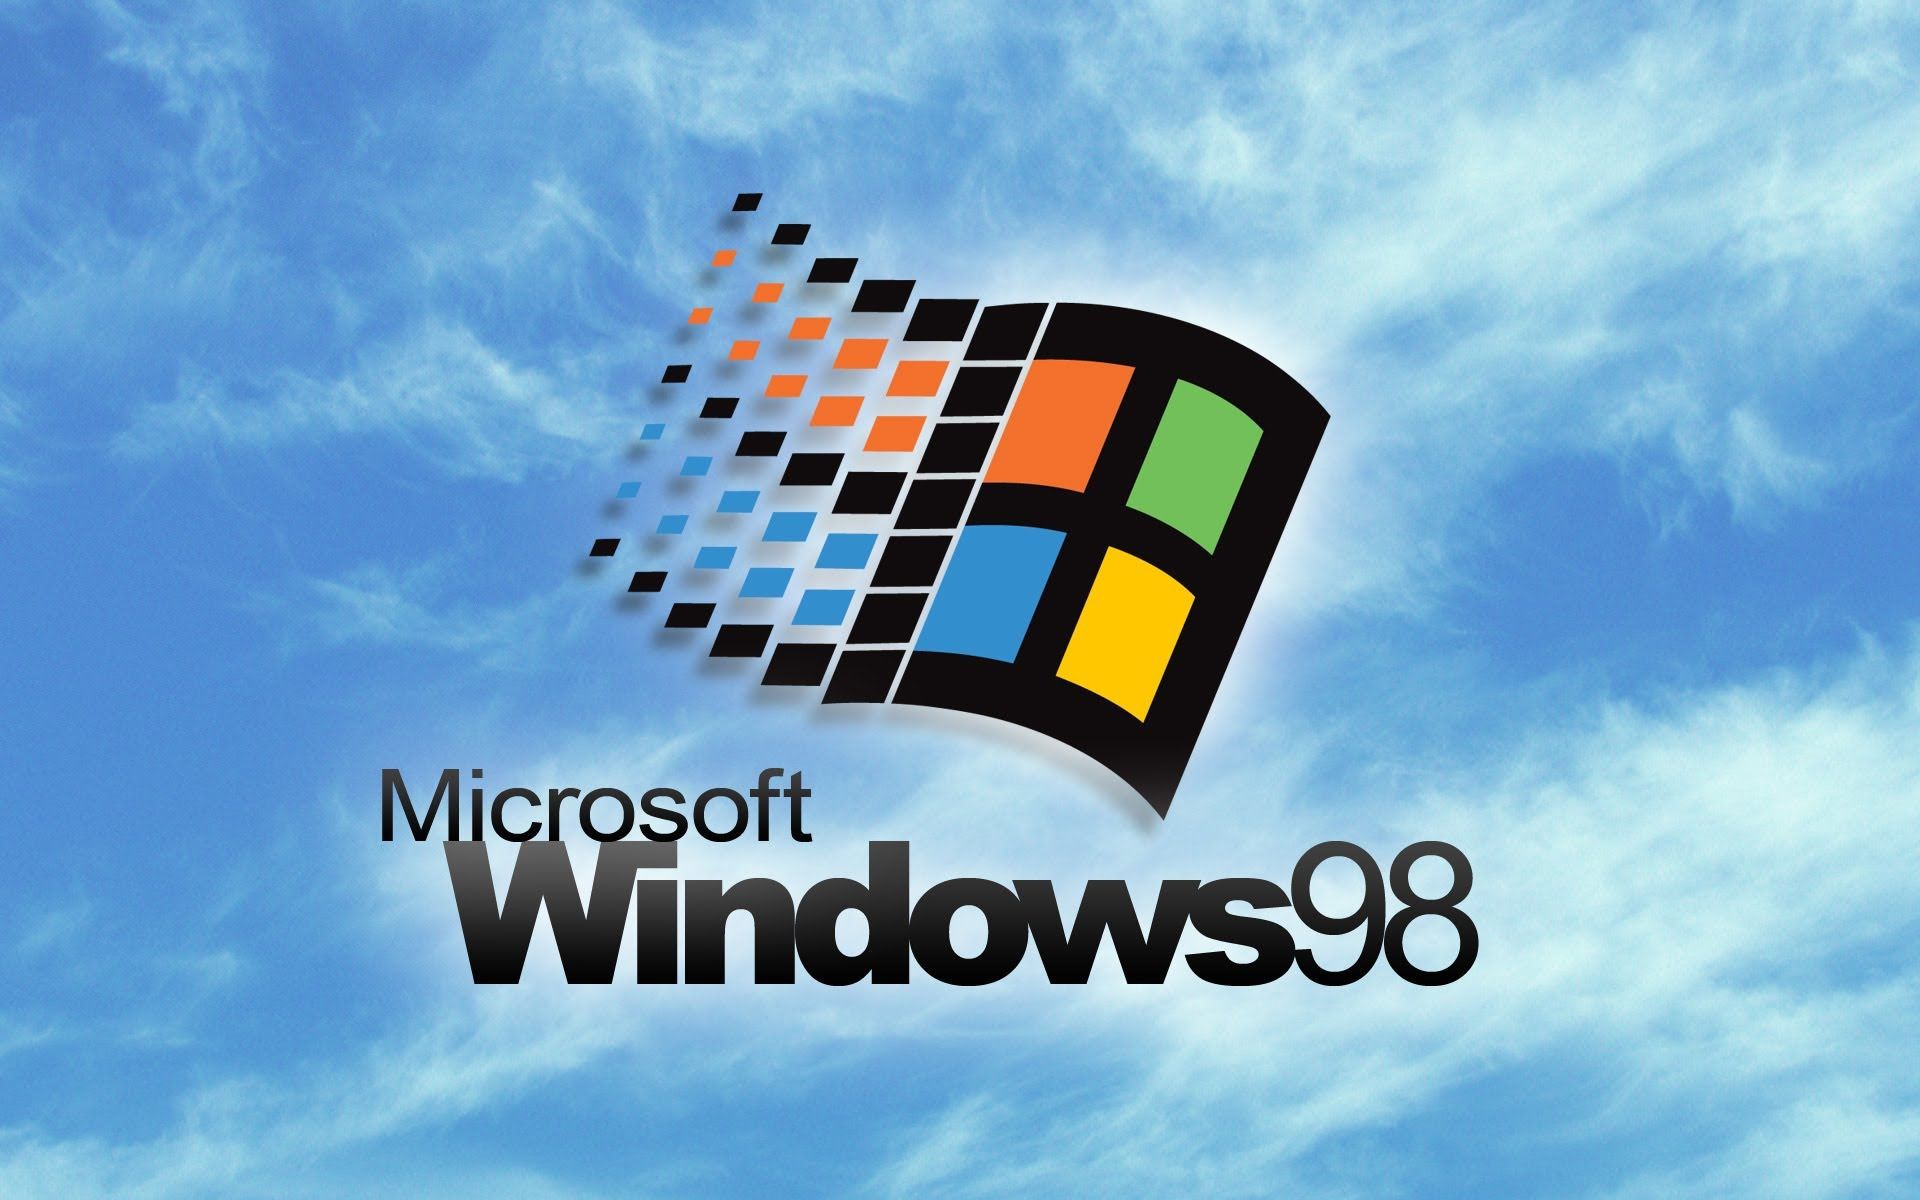 Hình nền Windows 98 trên WallpaperDog là bức tranh hoài cổ tuyệt đẹp, đưa bạn trở về ký ức tuổi thơ. Bạn sẽ được ngắm nhìn những biểu tượng mà hầu như ai cũng từng dùng, nhưng giờ đây lại được tô vẽ đầy màu sắc trên máy tính của mình. Hãy ghé thăm WallpaperDog và tìm thấy hình nền Windows 98 để trang trí cho màn hình của bạn!